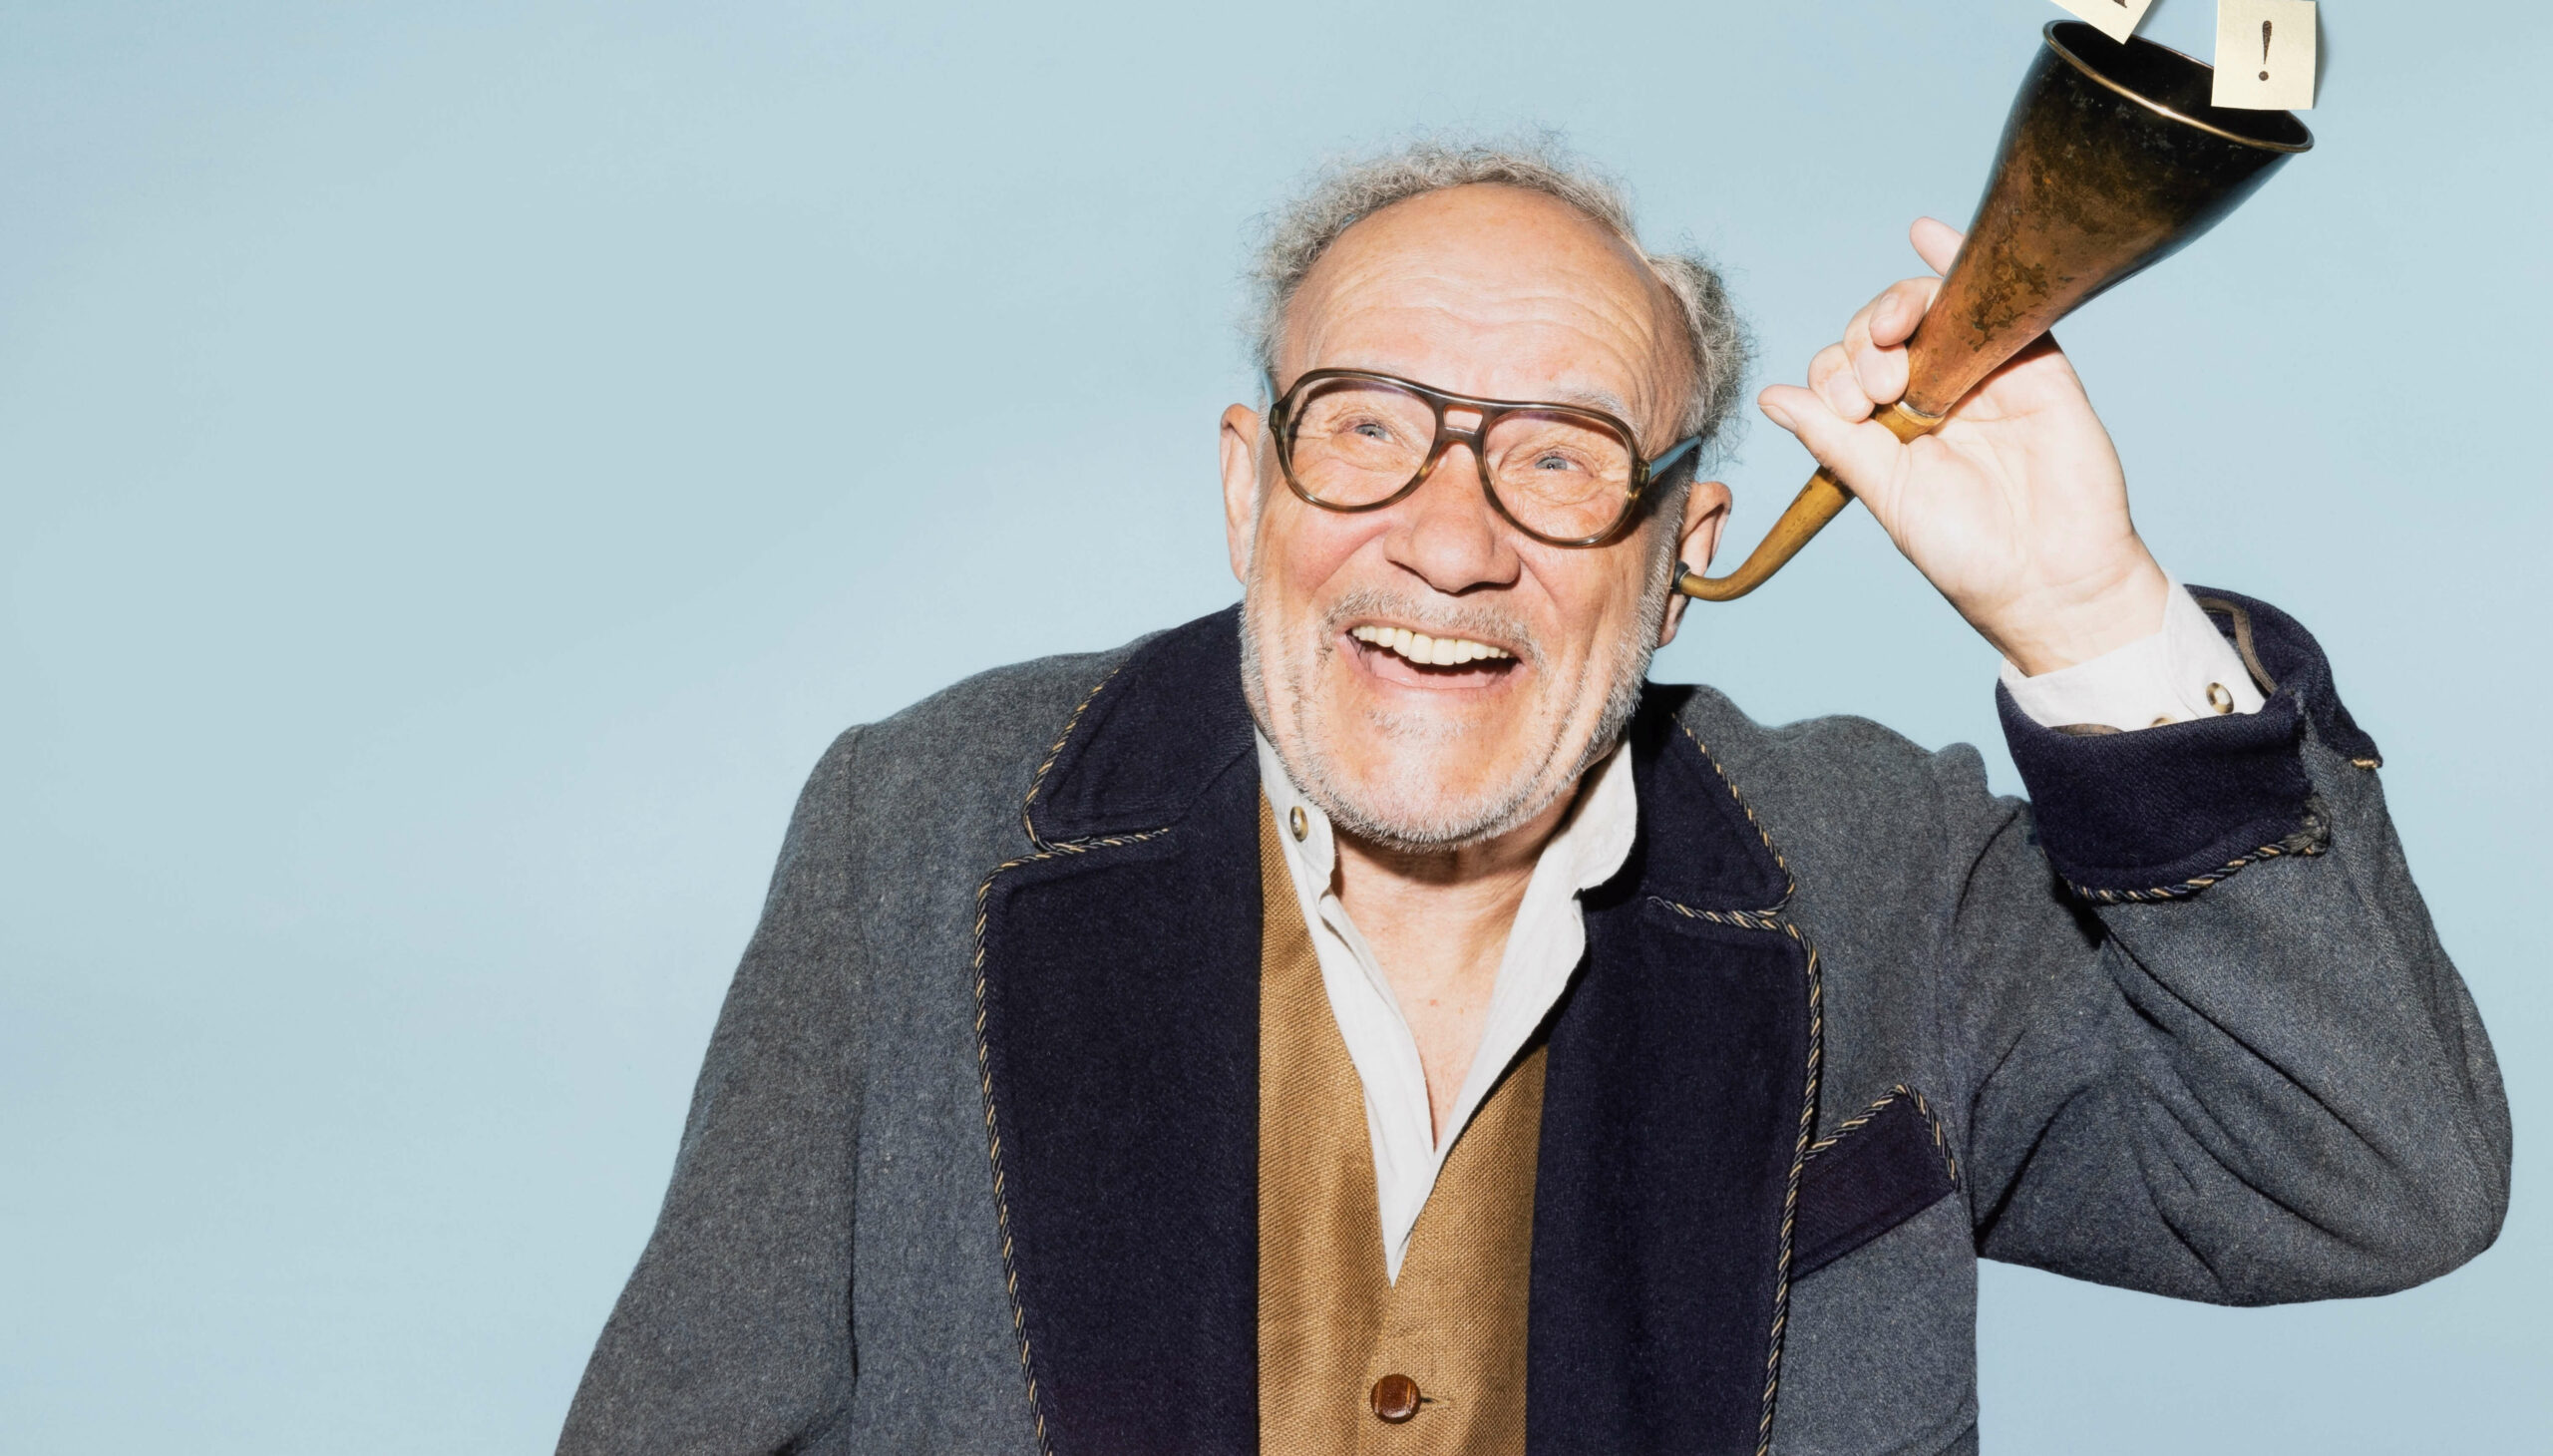 Der Schauspieler in der Rolle des Opa Meiners hält sich ein altertümliches Hörrohr ans Ohr und lacht